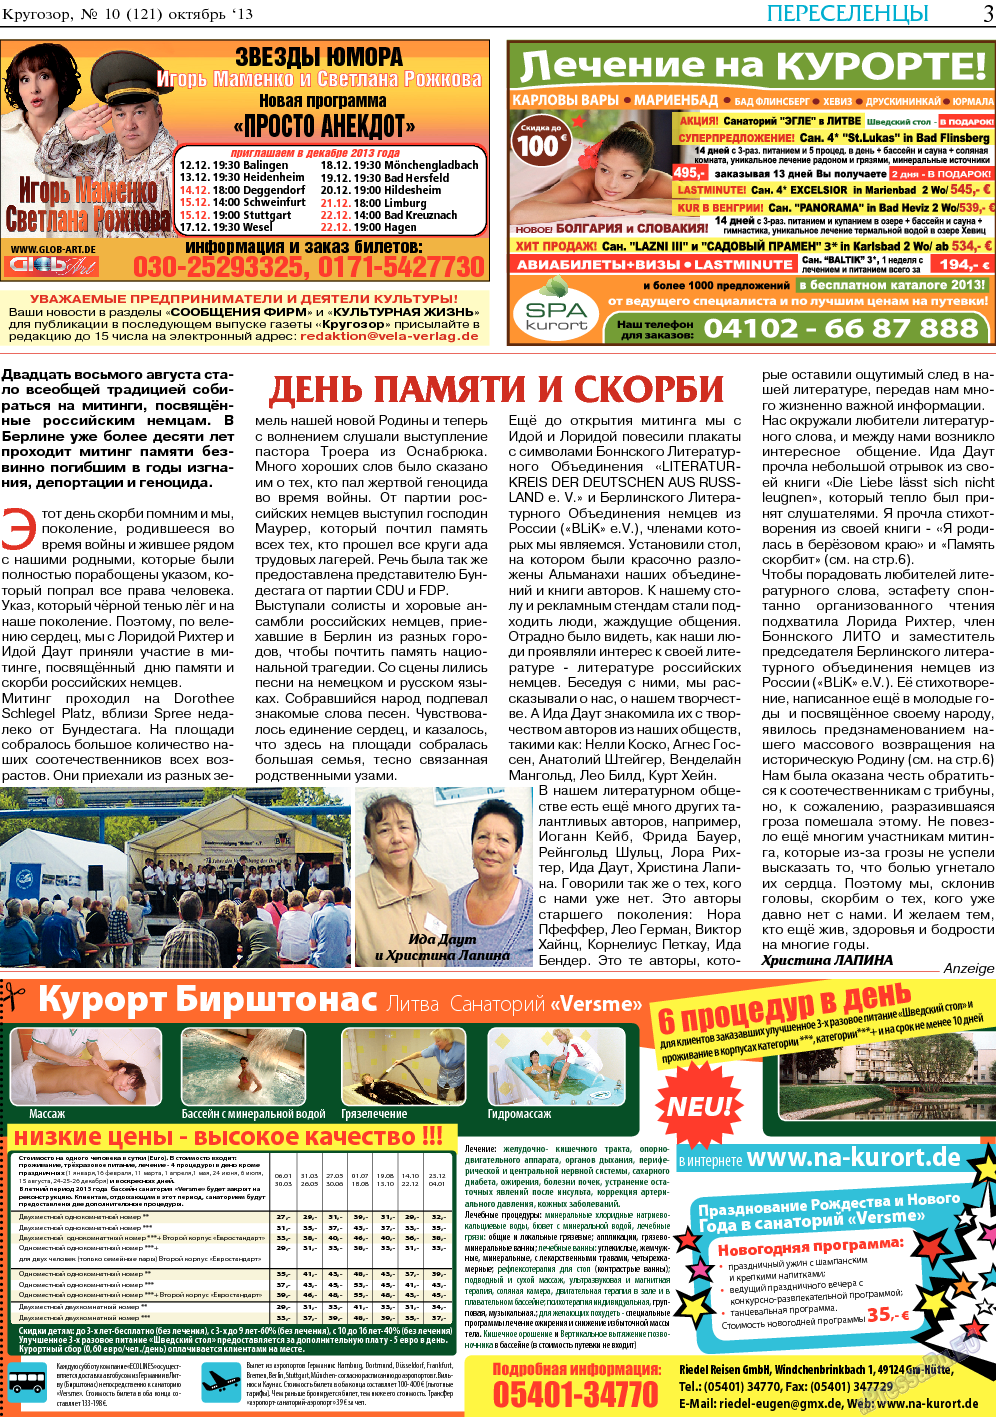 Кругозор (газета). 2013 год, номер 10, стр. 3